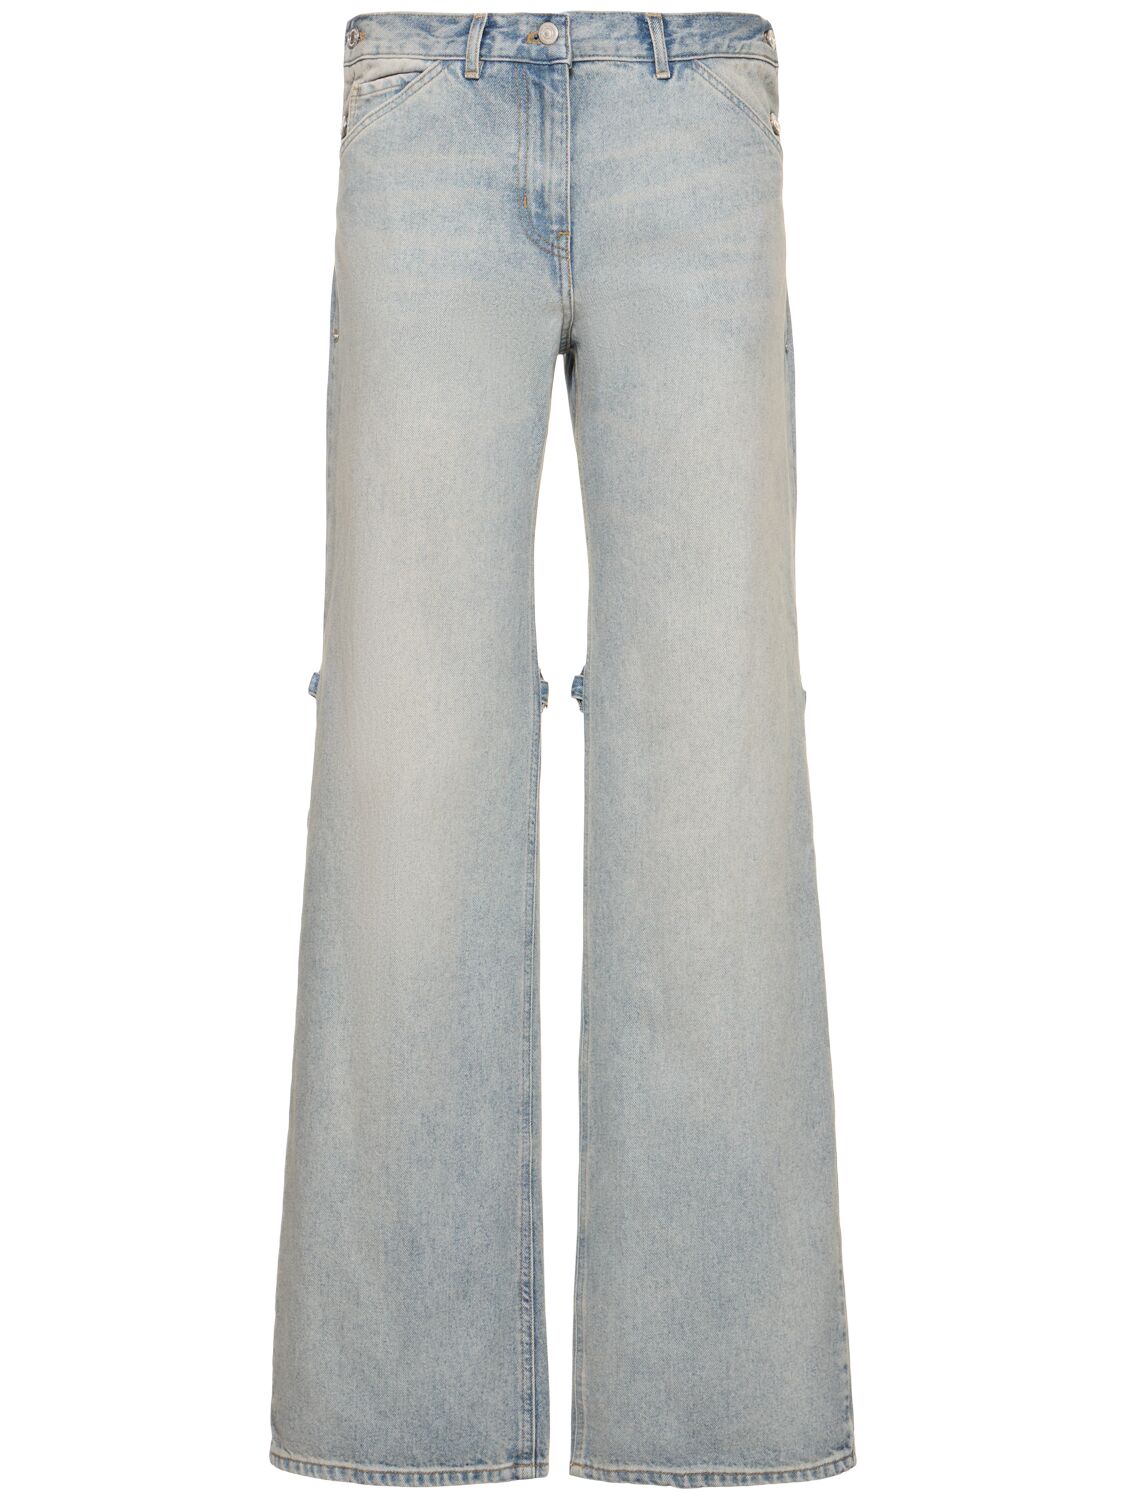 Image of Sailor Baggy Denim Cotton Jeans